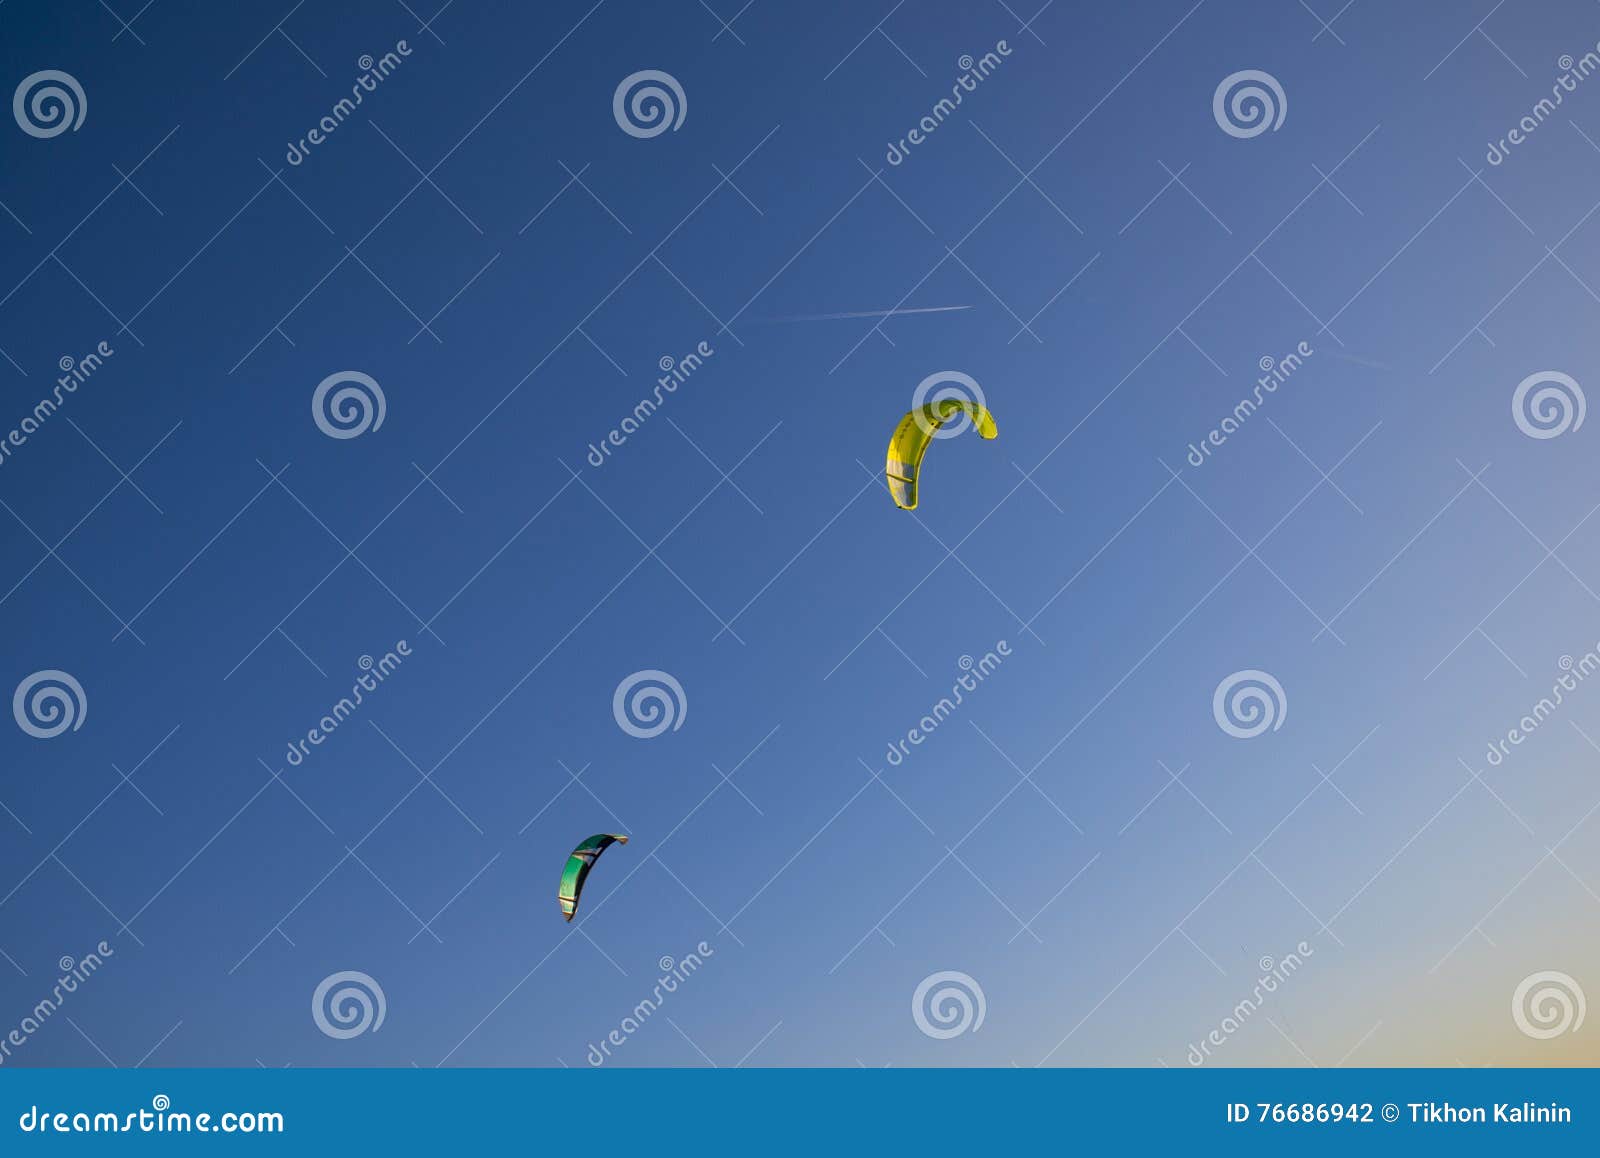 Unosić się w niebo spadochronach ekscytuje rozrywkę kitesurfing